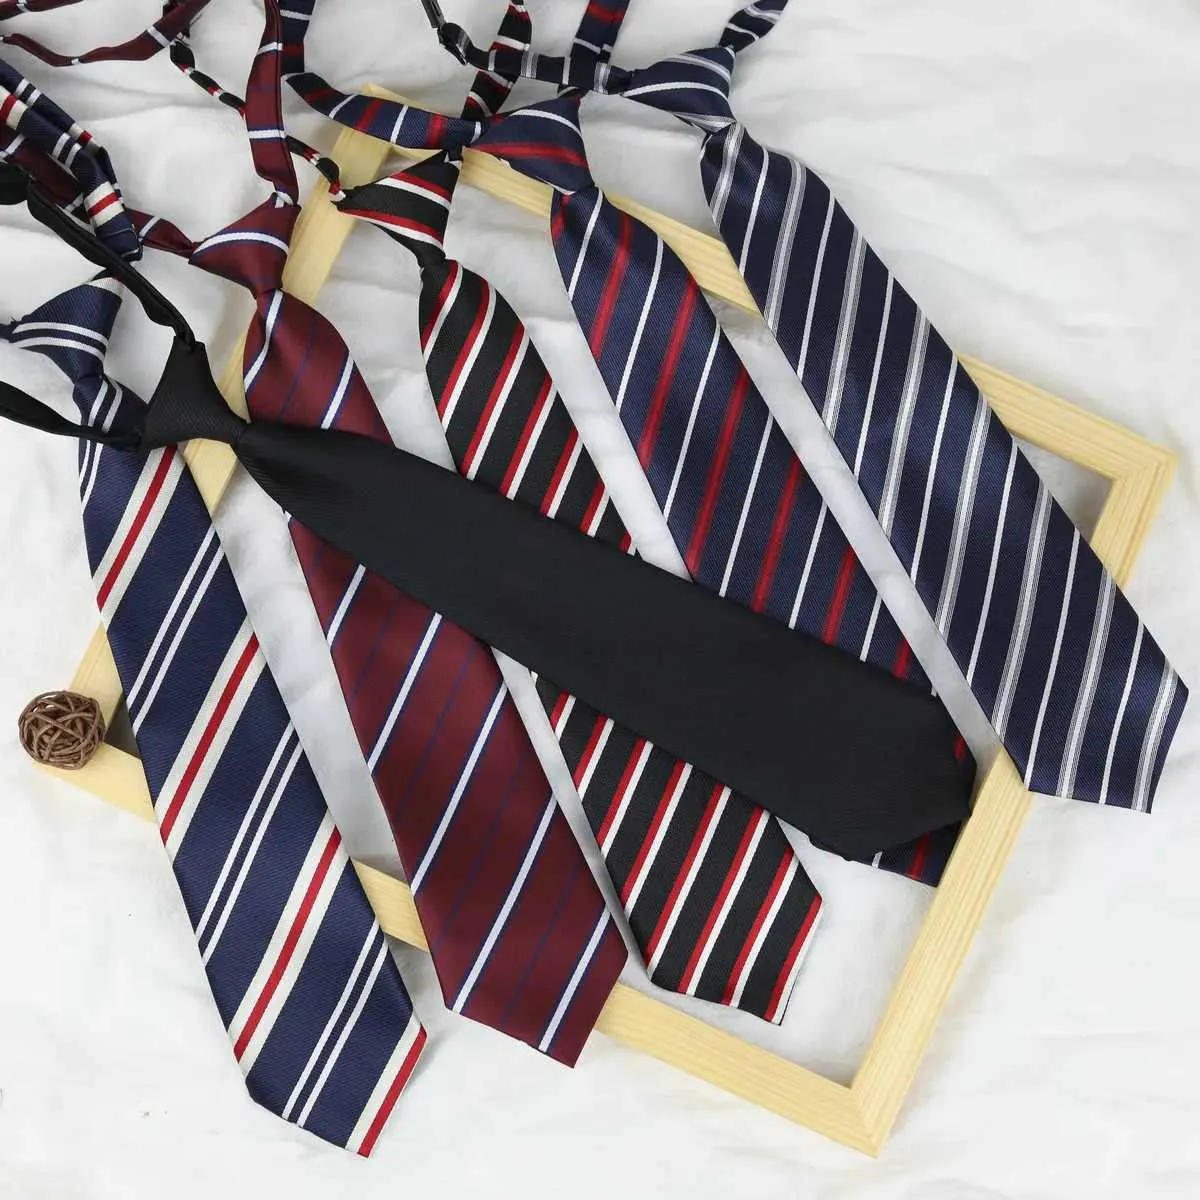 Boyun bağları 33 * 6cm/13 * 13cm jk kravat kadın düz boyun kravat japon tarzı jk üniforma sevimli boyun düz boyun üniforma aksesuarlarıc240410